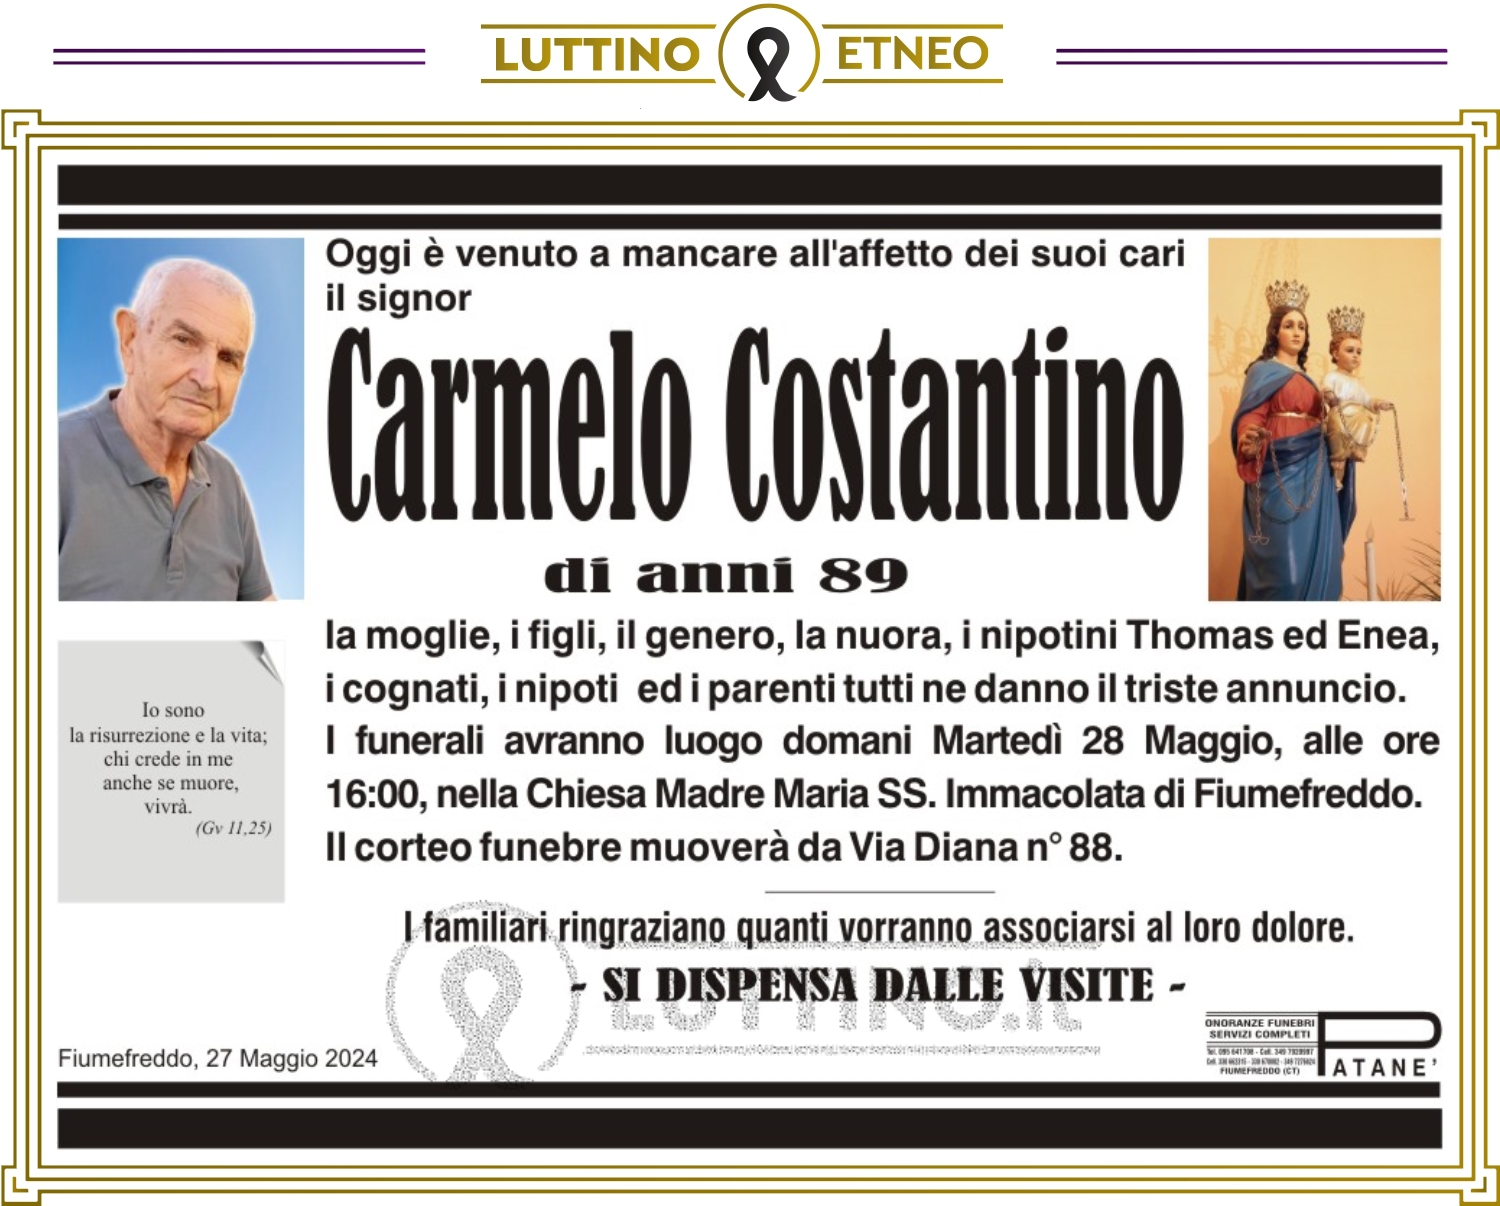 Carmelo Costantino